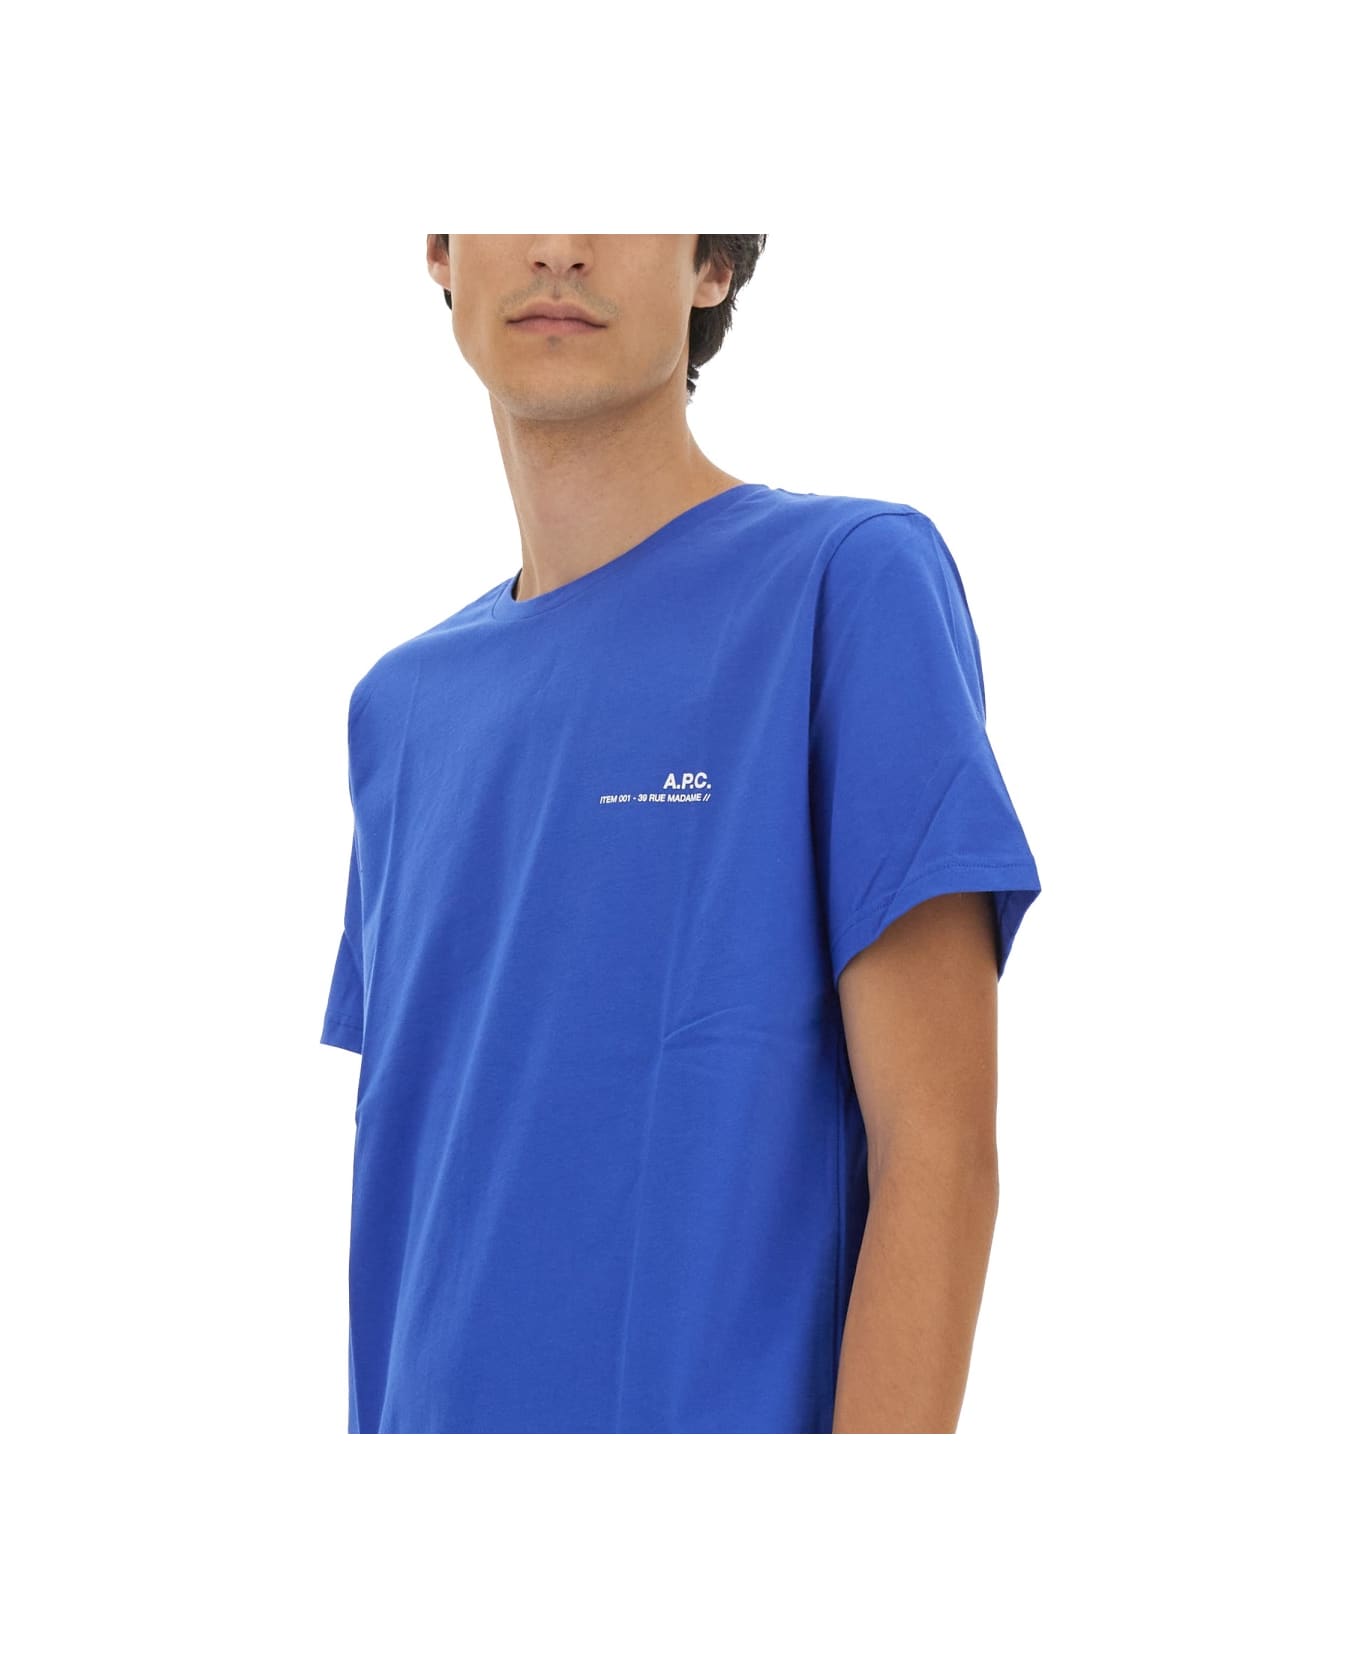 A.P.C. Logo Print T-shirt - BLUE シャツ